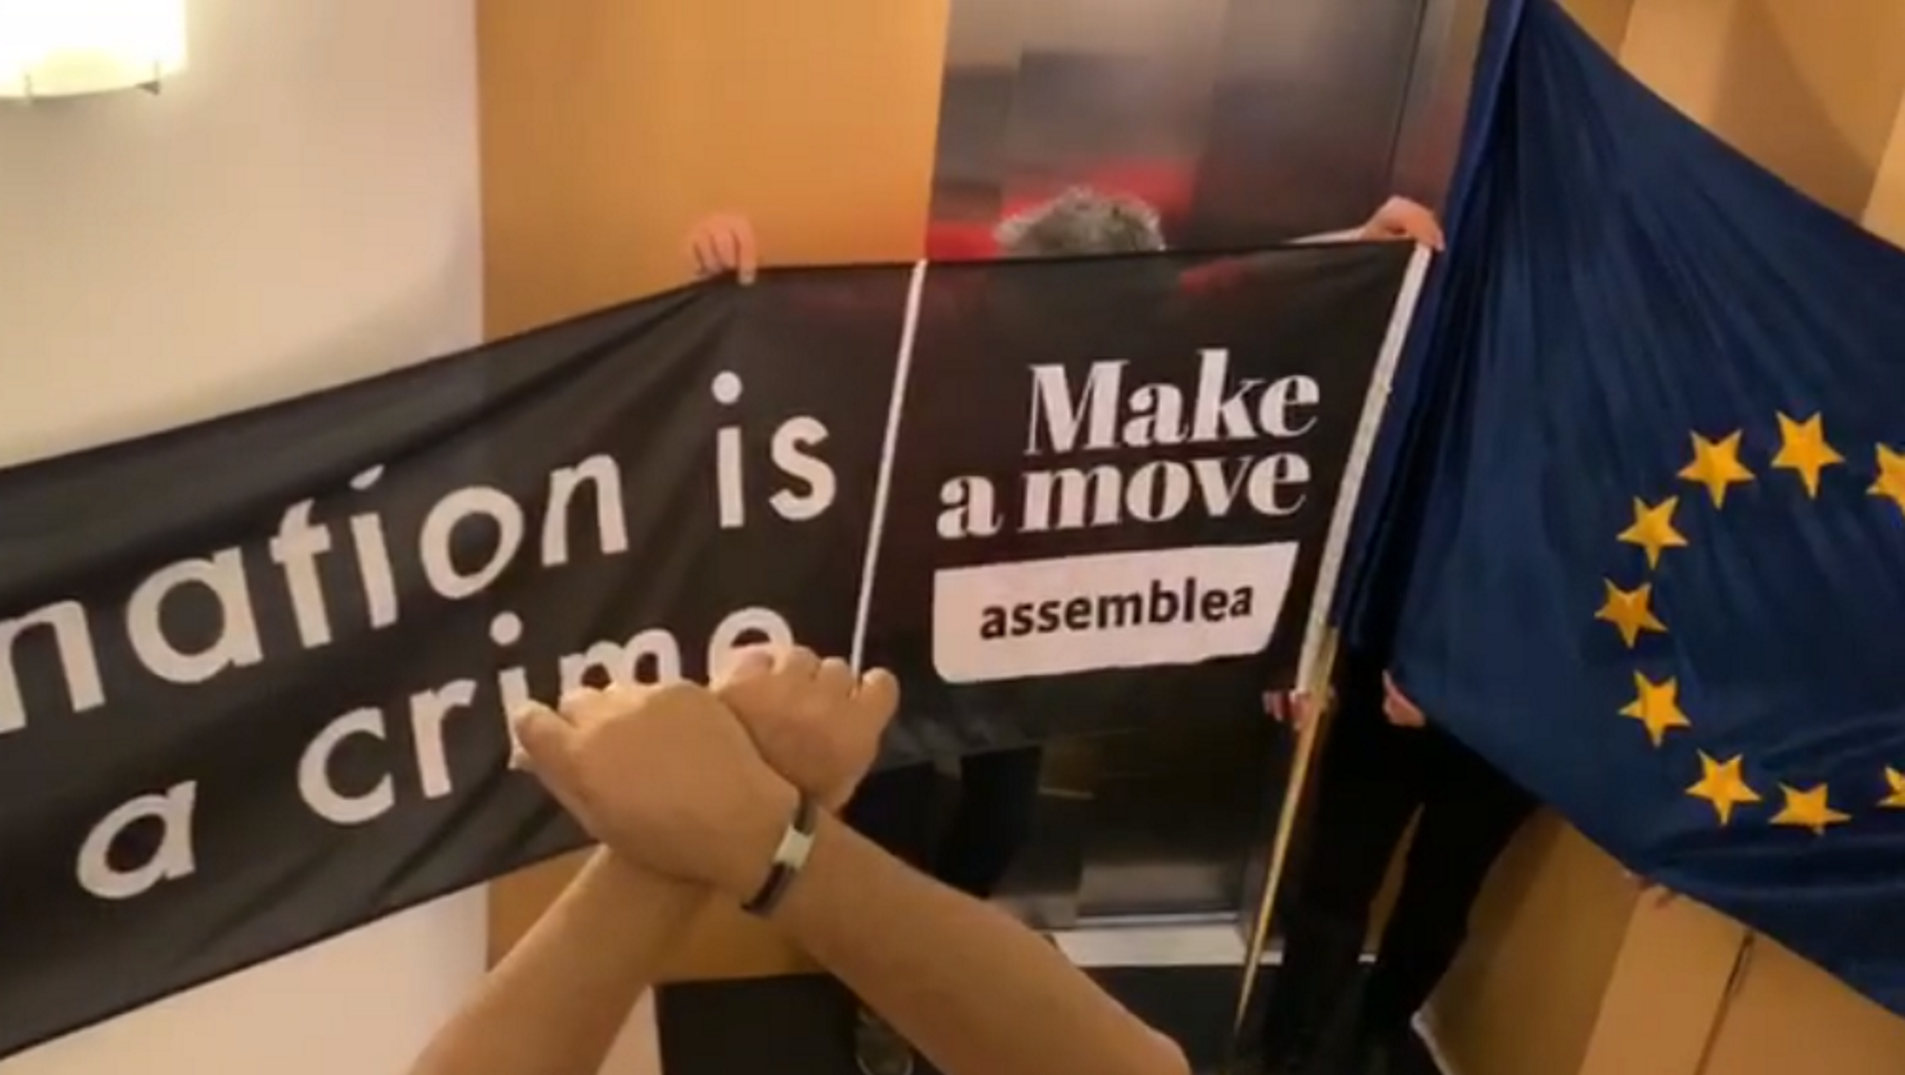 VIDEO: Mensaje de los encerrados en la Comisión Europea: "Aquí empieza la independencia"